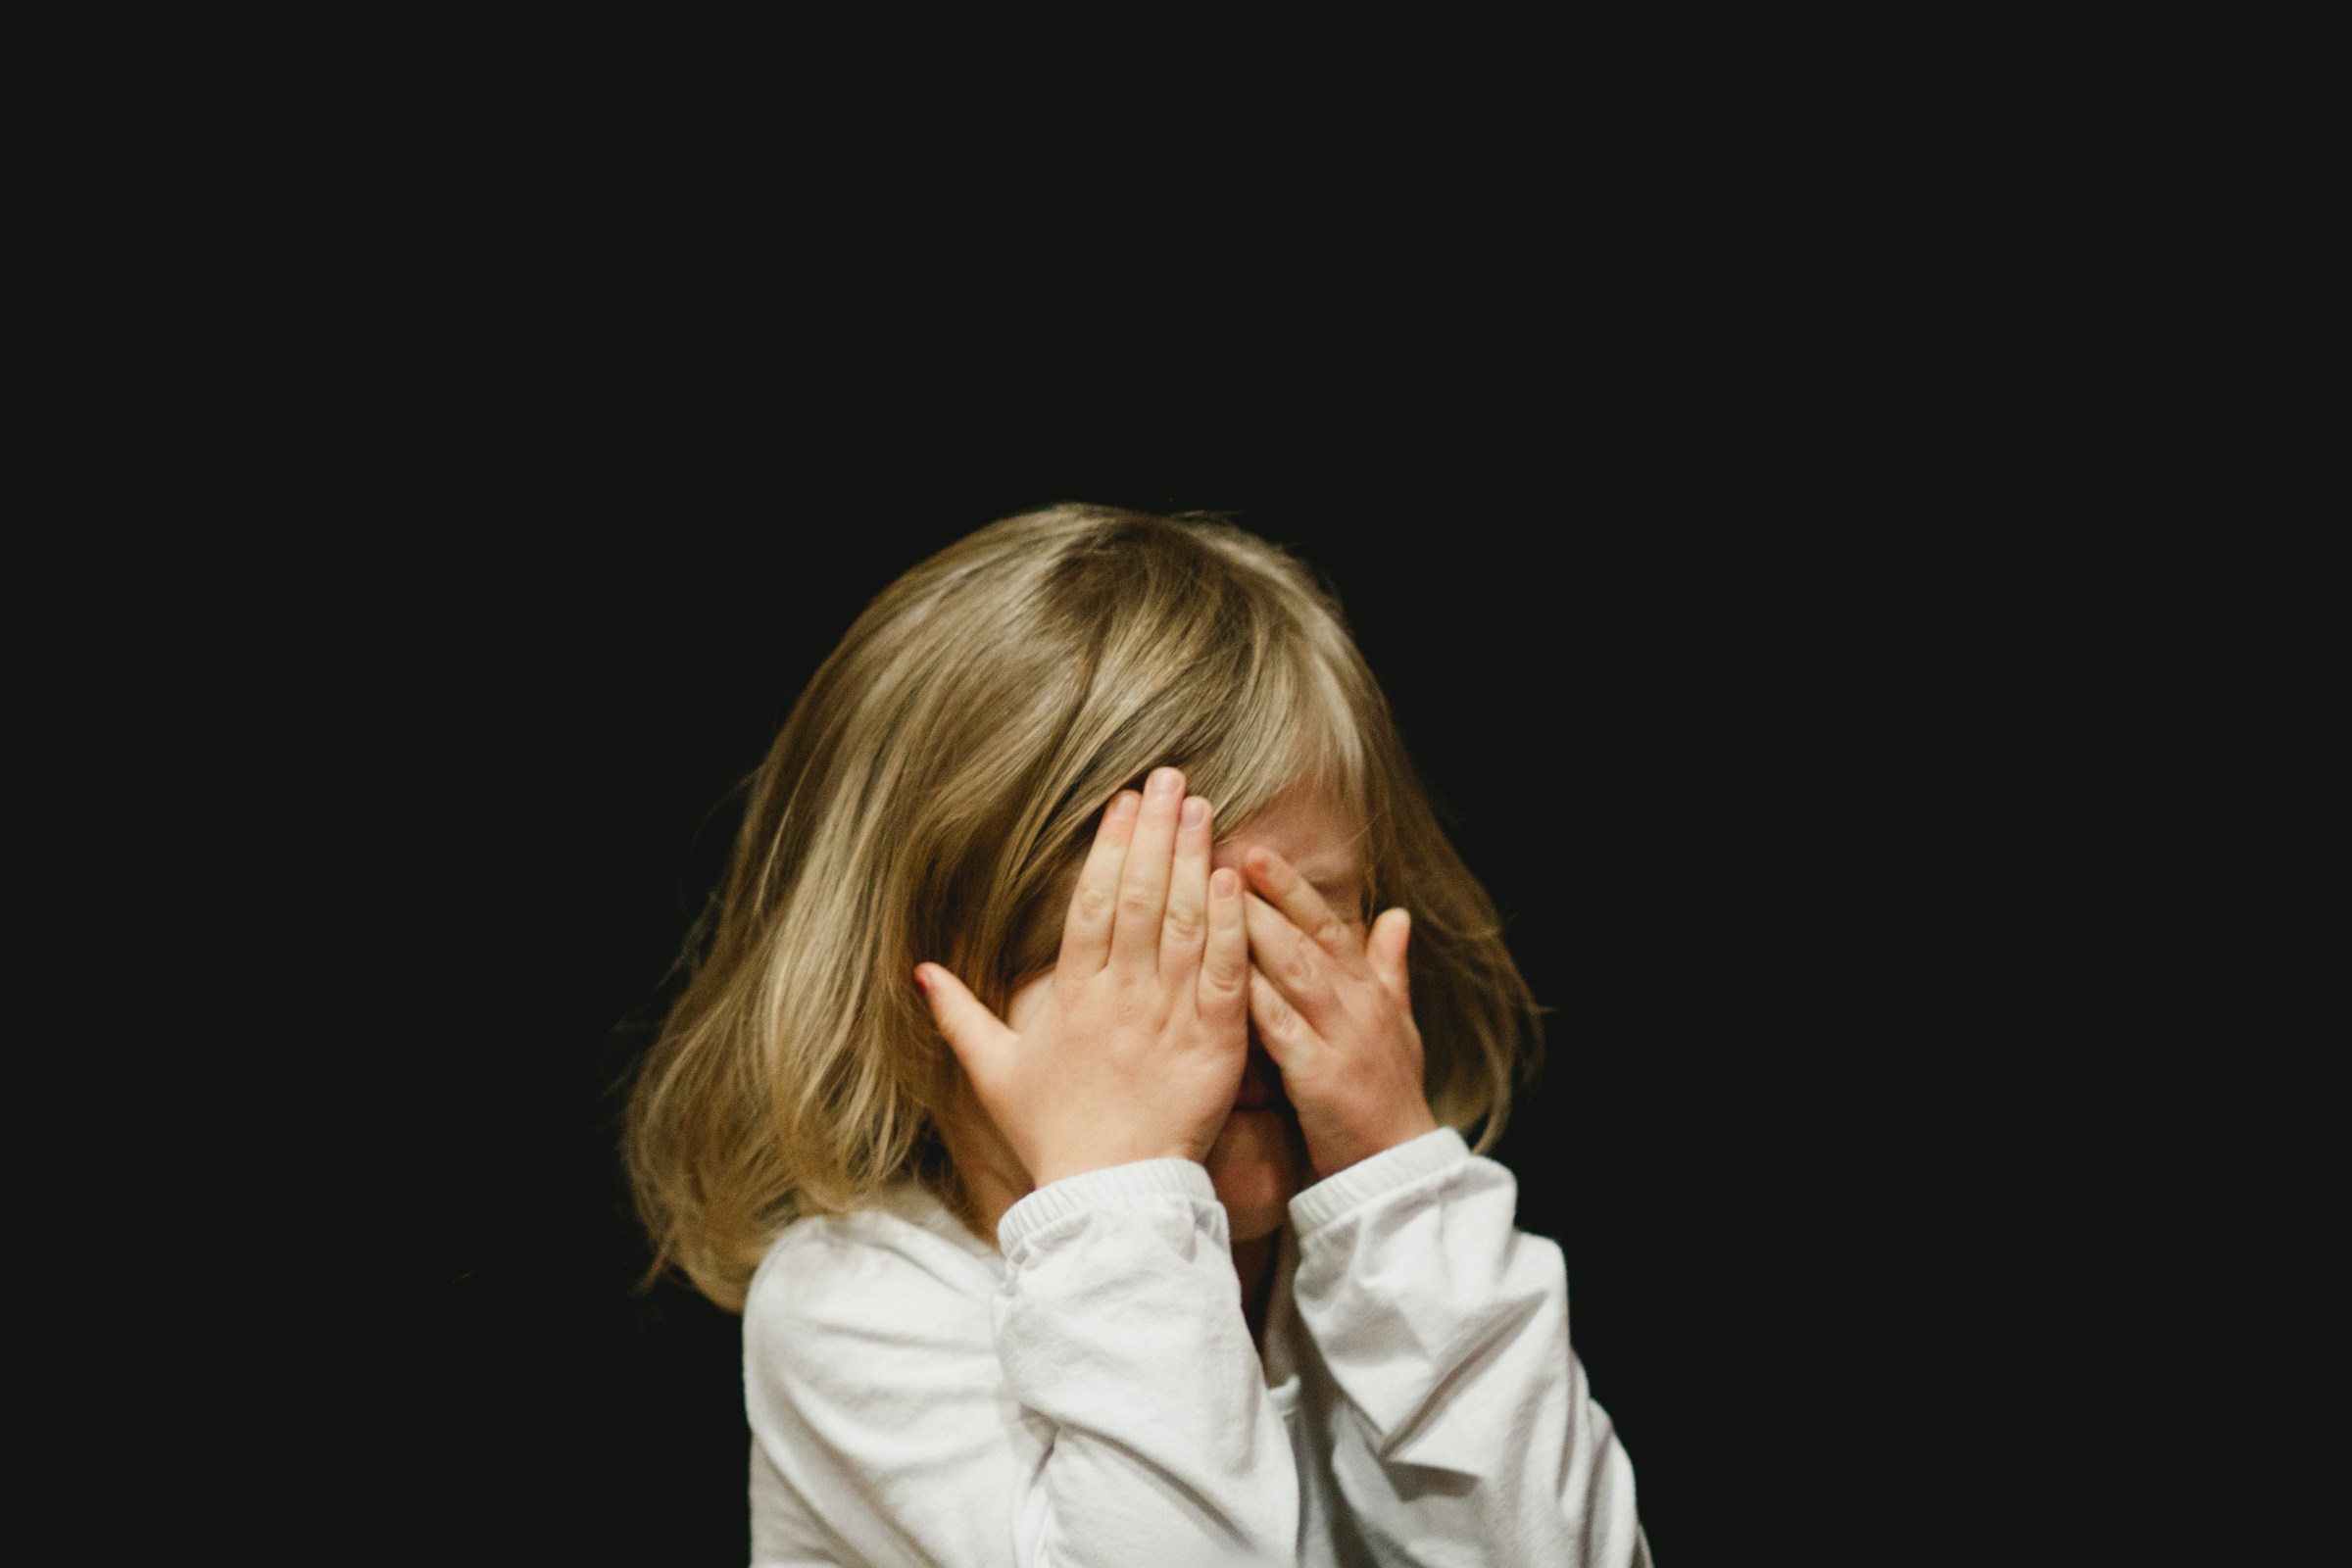 Ein kleines Mädchen, das sein Gesicht bedeckt | Quelle: Unsplash